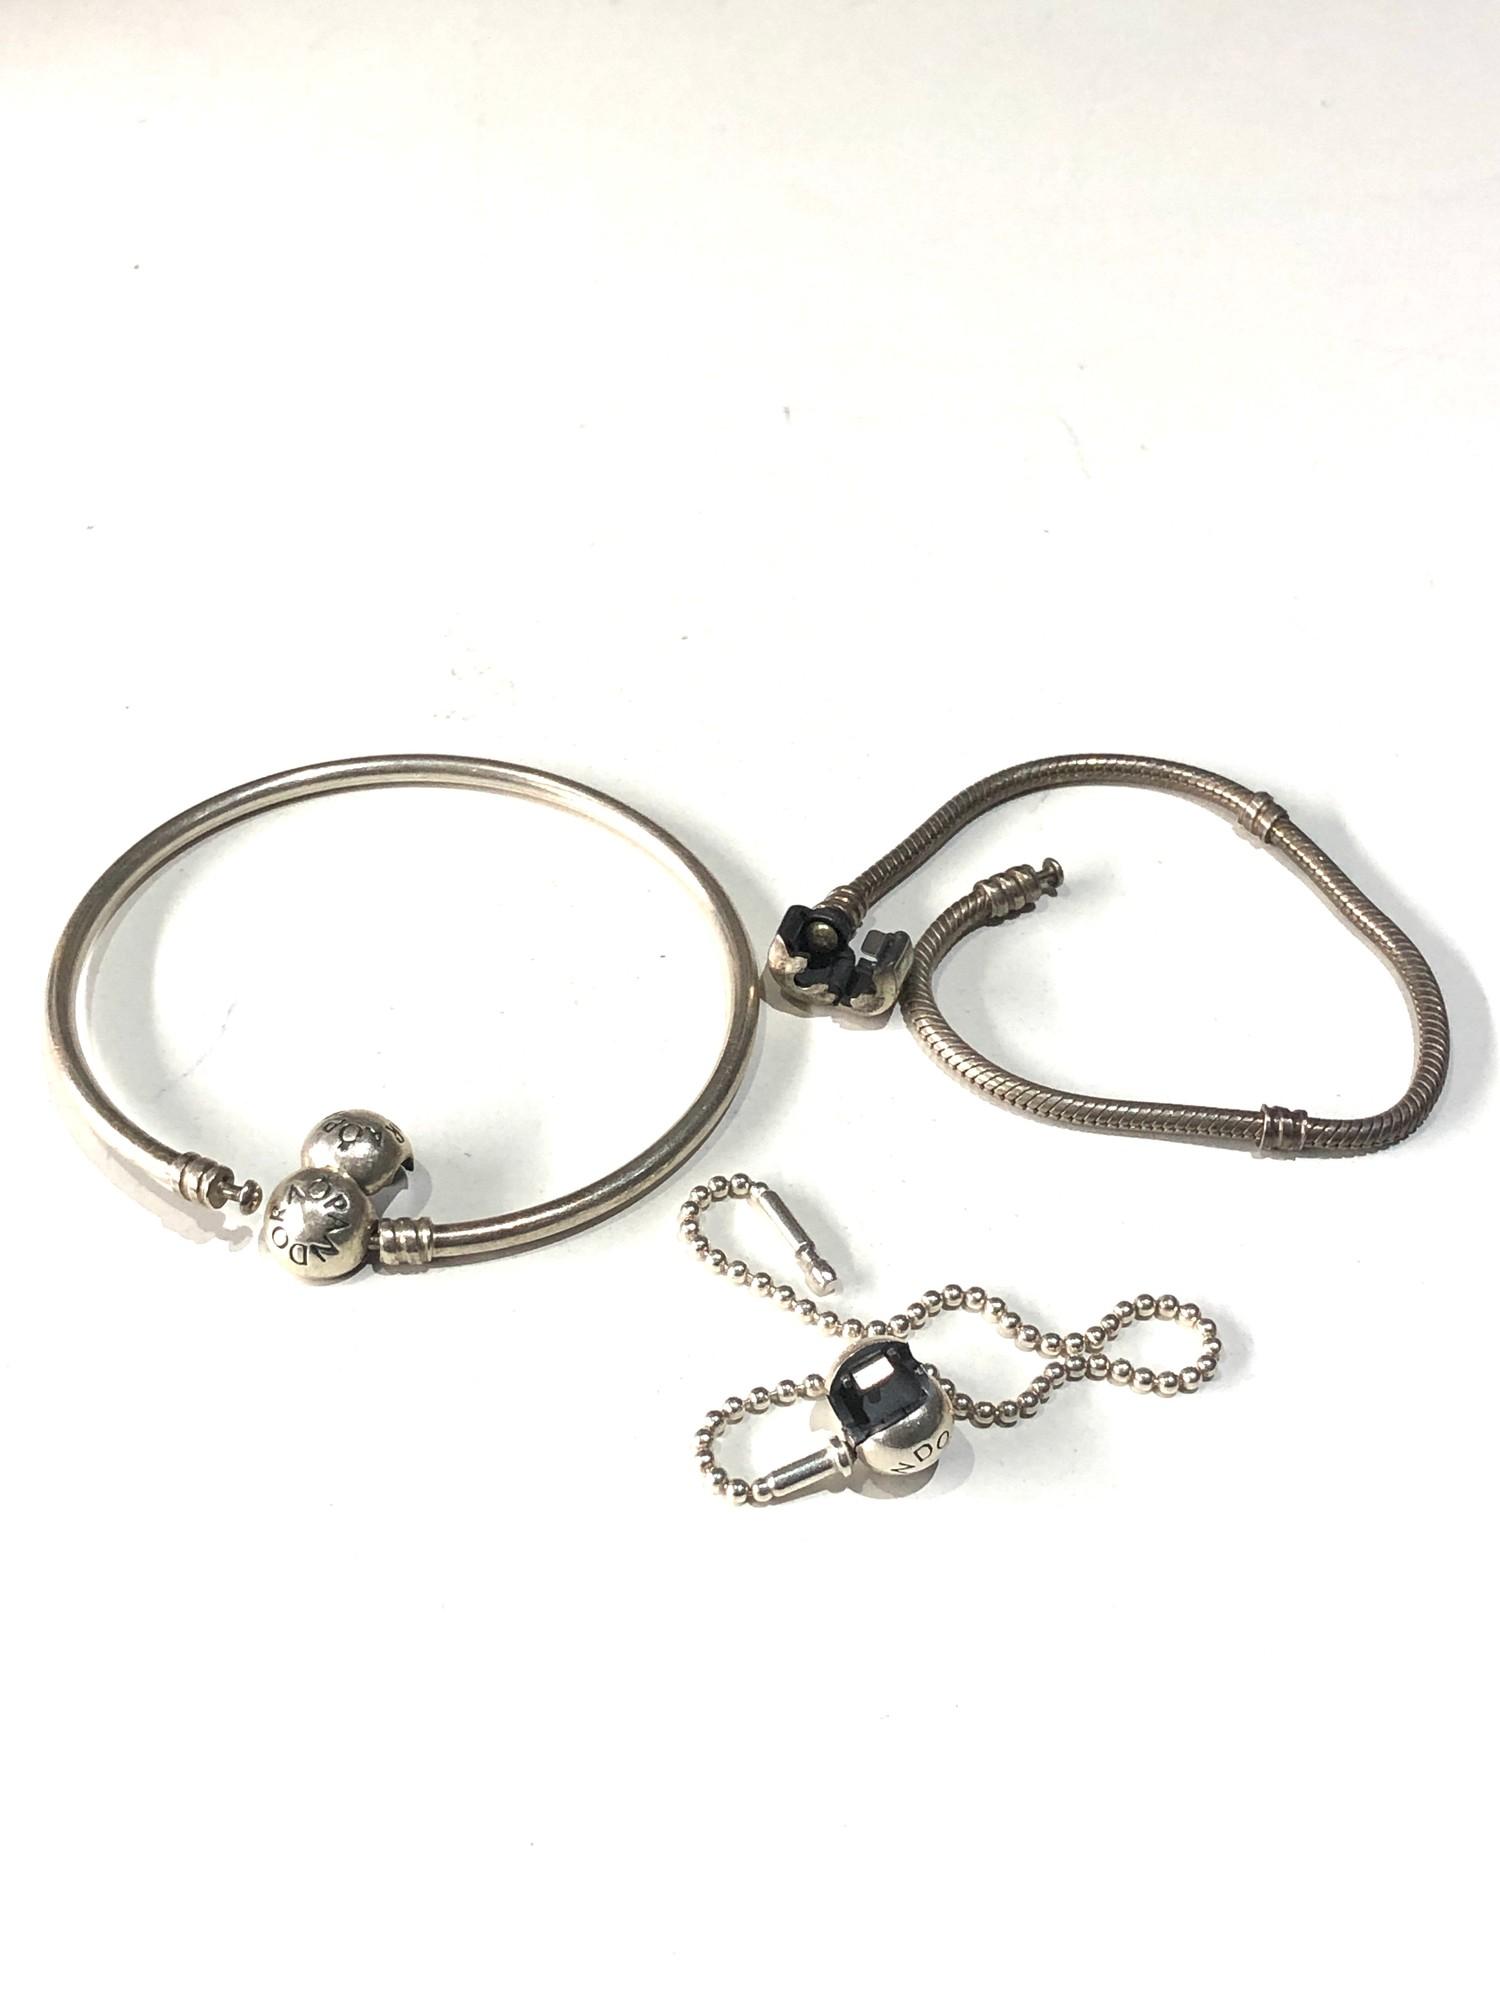 3 pandora silver bracelets - Image 2 of 2